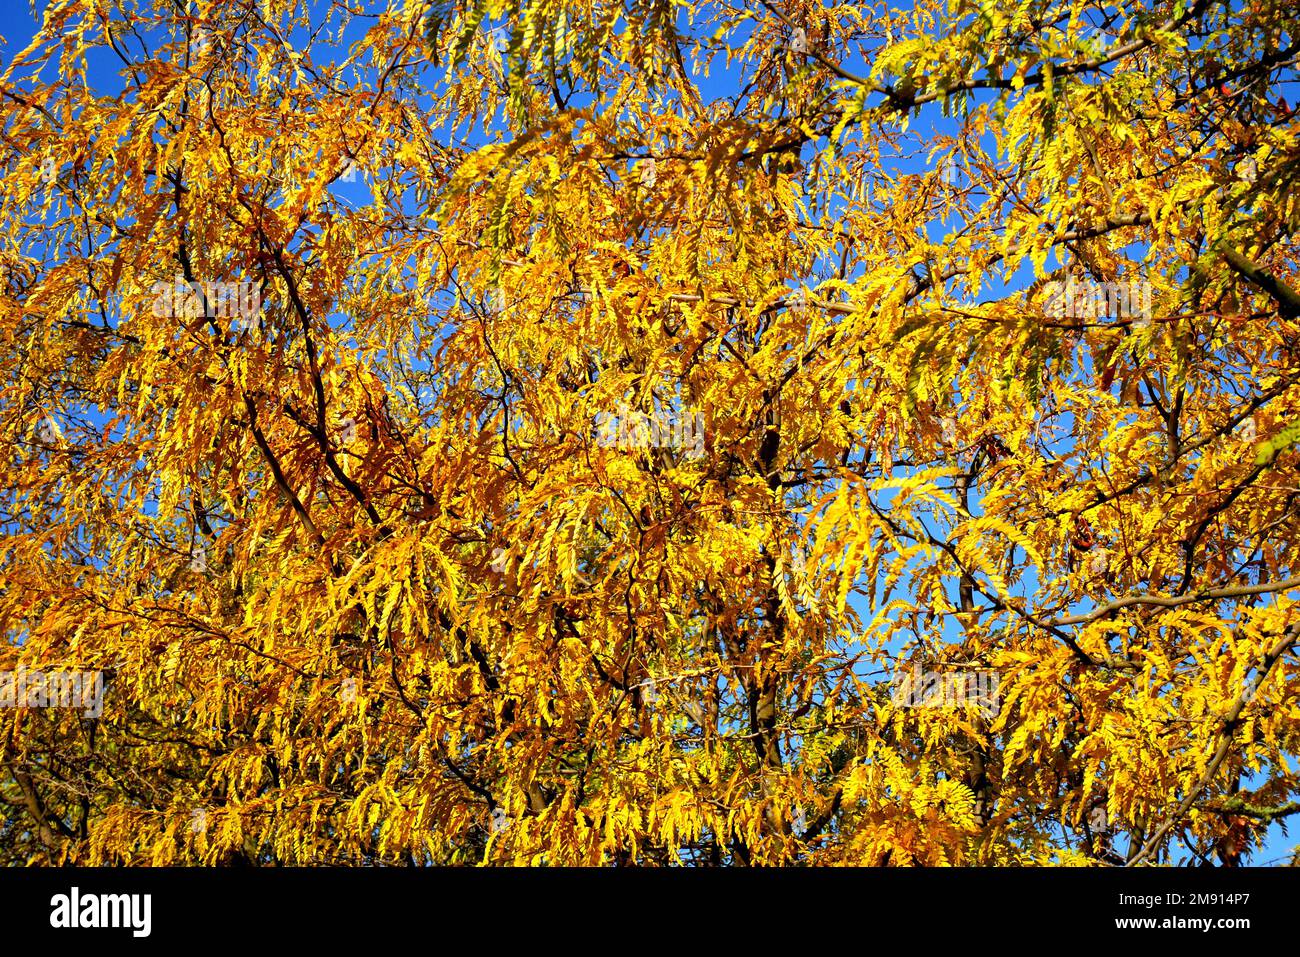 Acacia en automne avec des feuilles jaunes et des gousses de graines contre un ciel bleu, Balatonfokajar, comté de Veszprem, Hongrie Banque D'Images